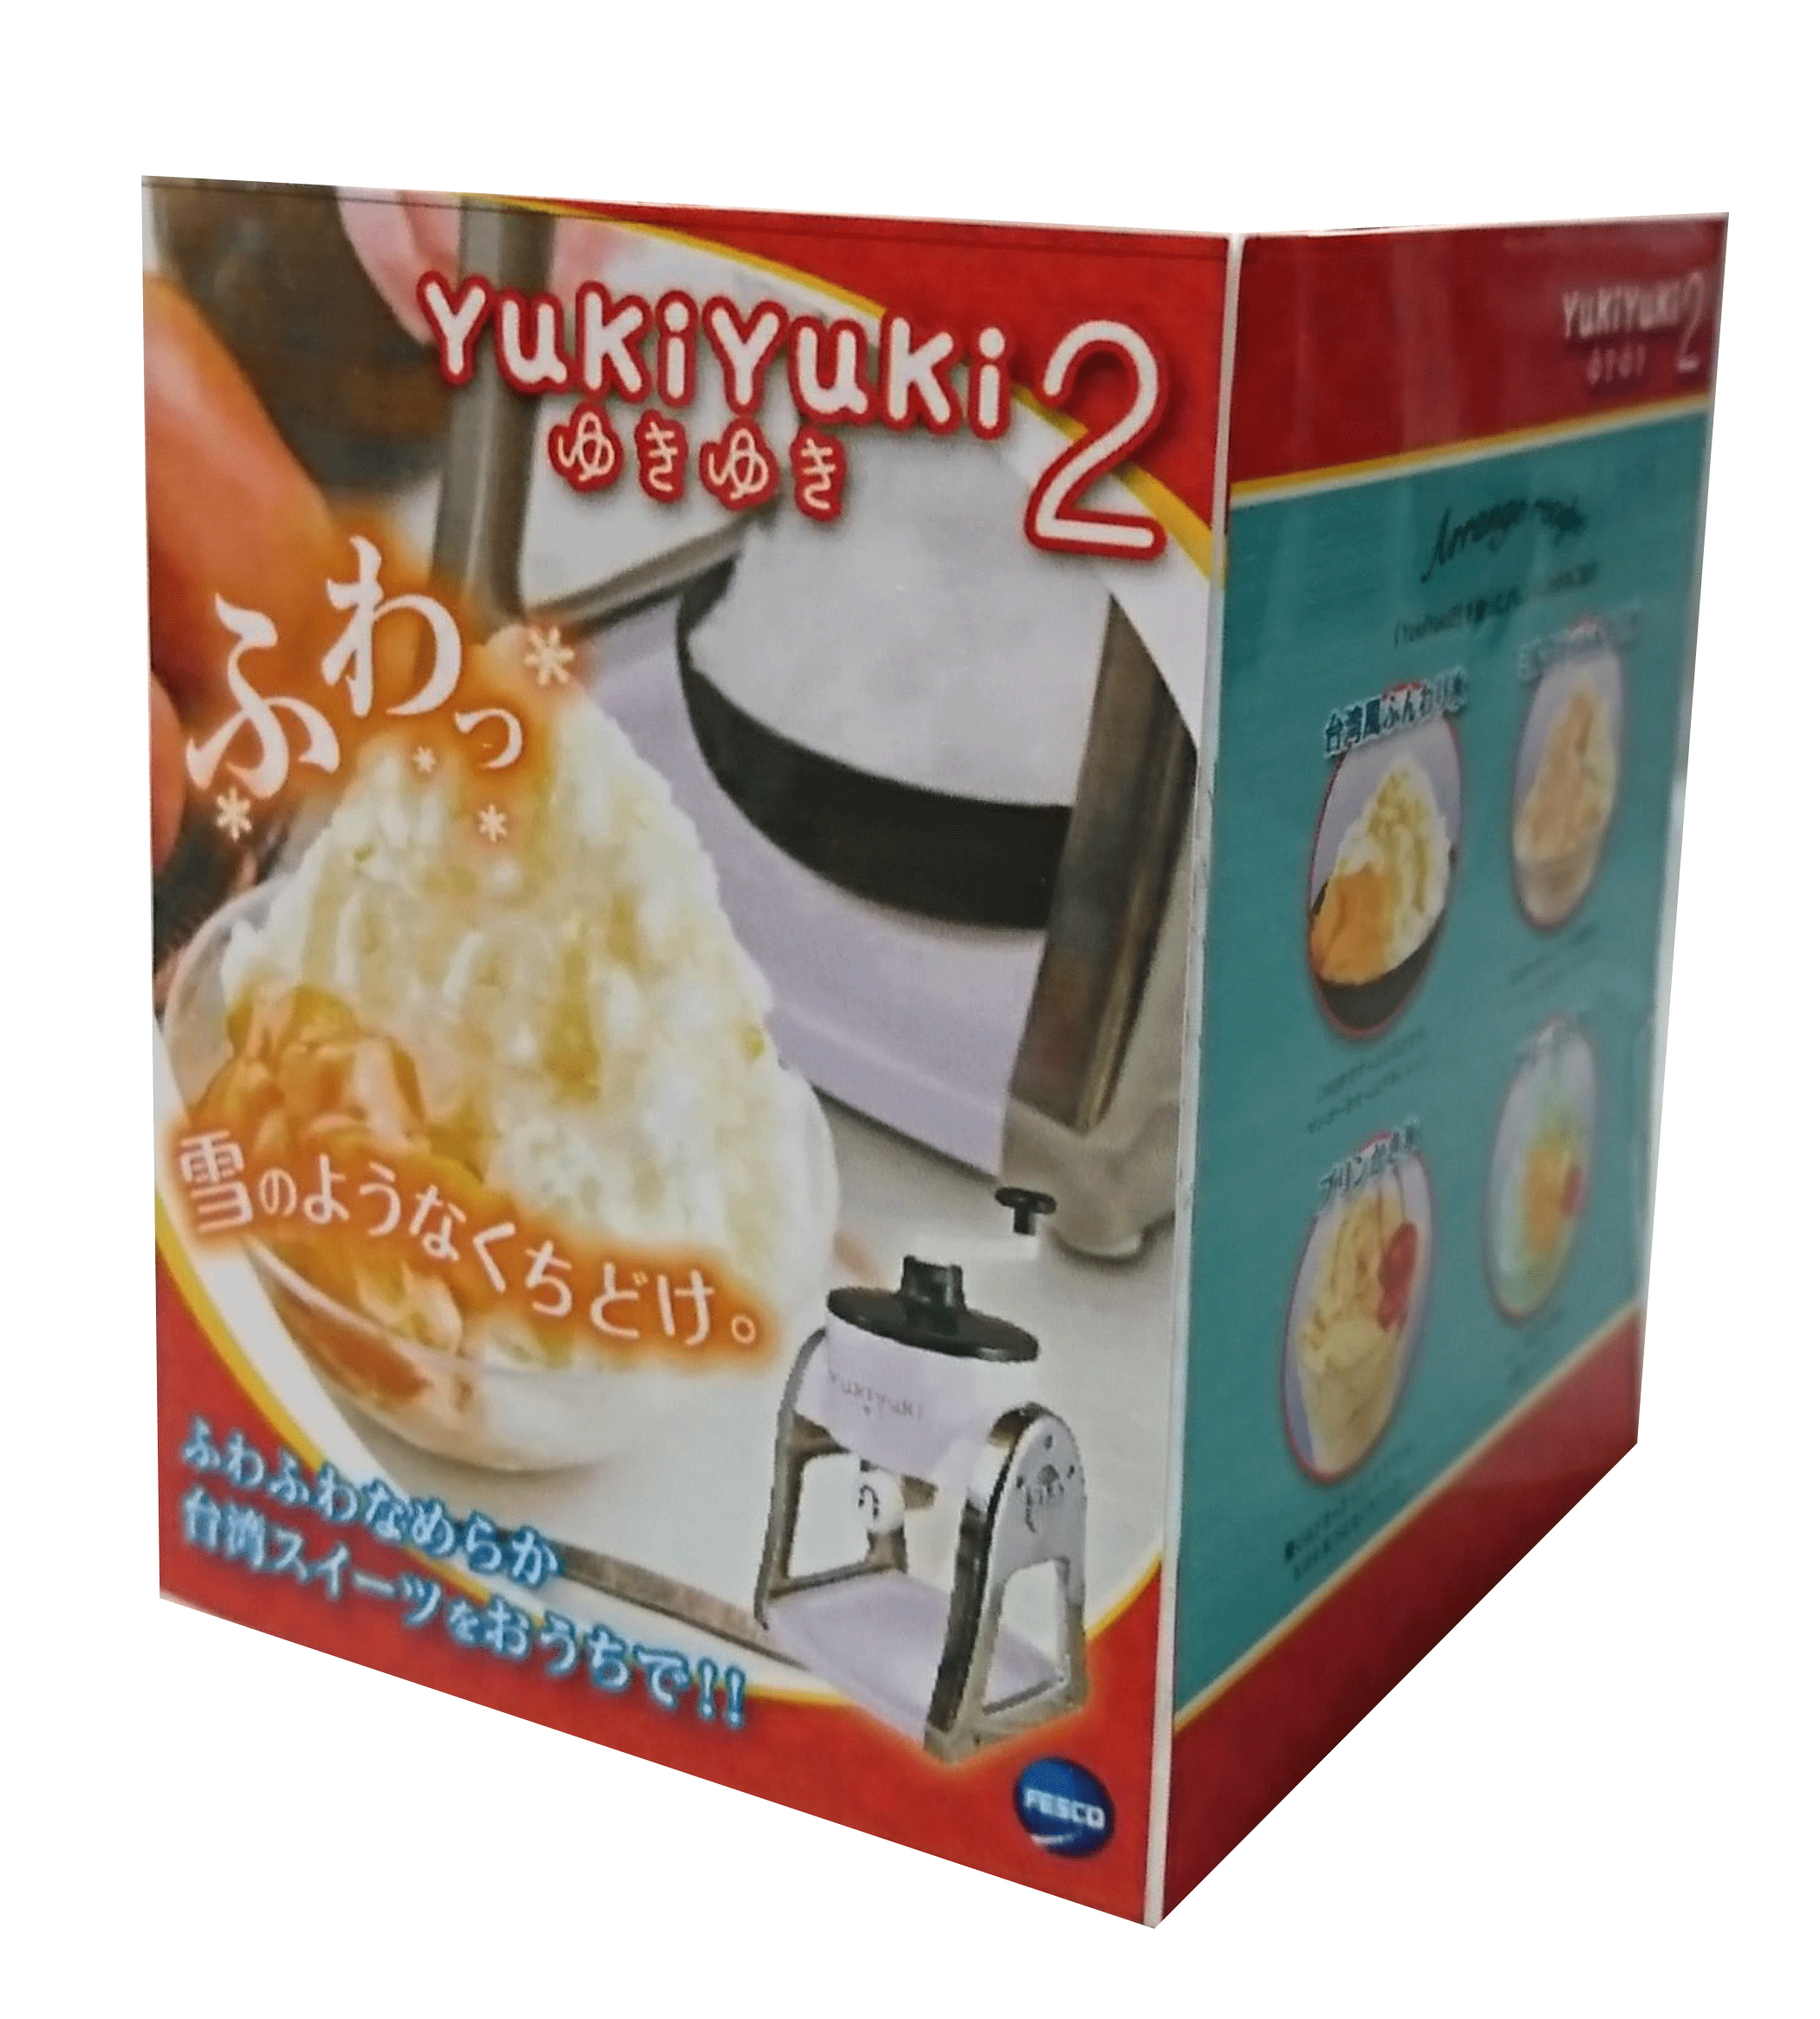 ふわふわ氷メーカー Yuki Yuki 2 送料無料 Fesco Ec